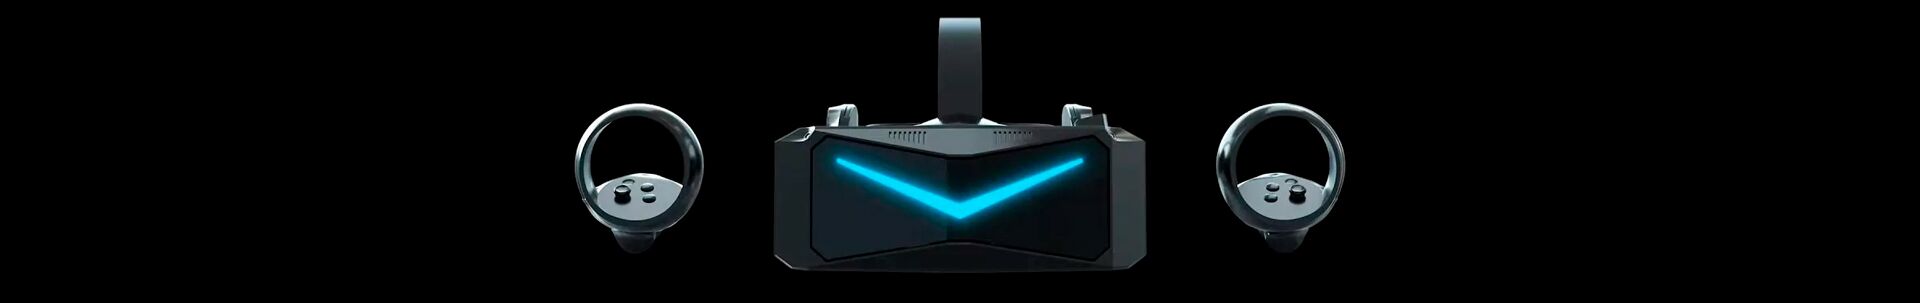 Анонсирована VR-гарнитура нового поколения Pimax Reality 12K QLED